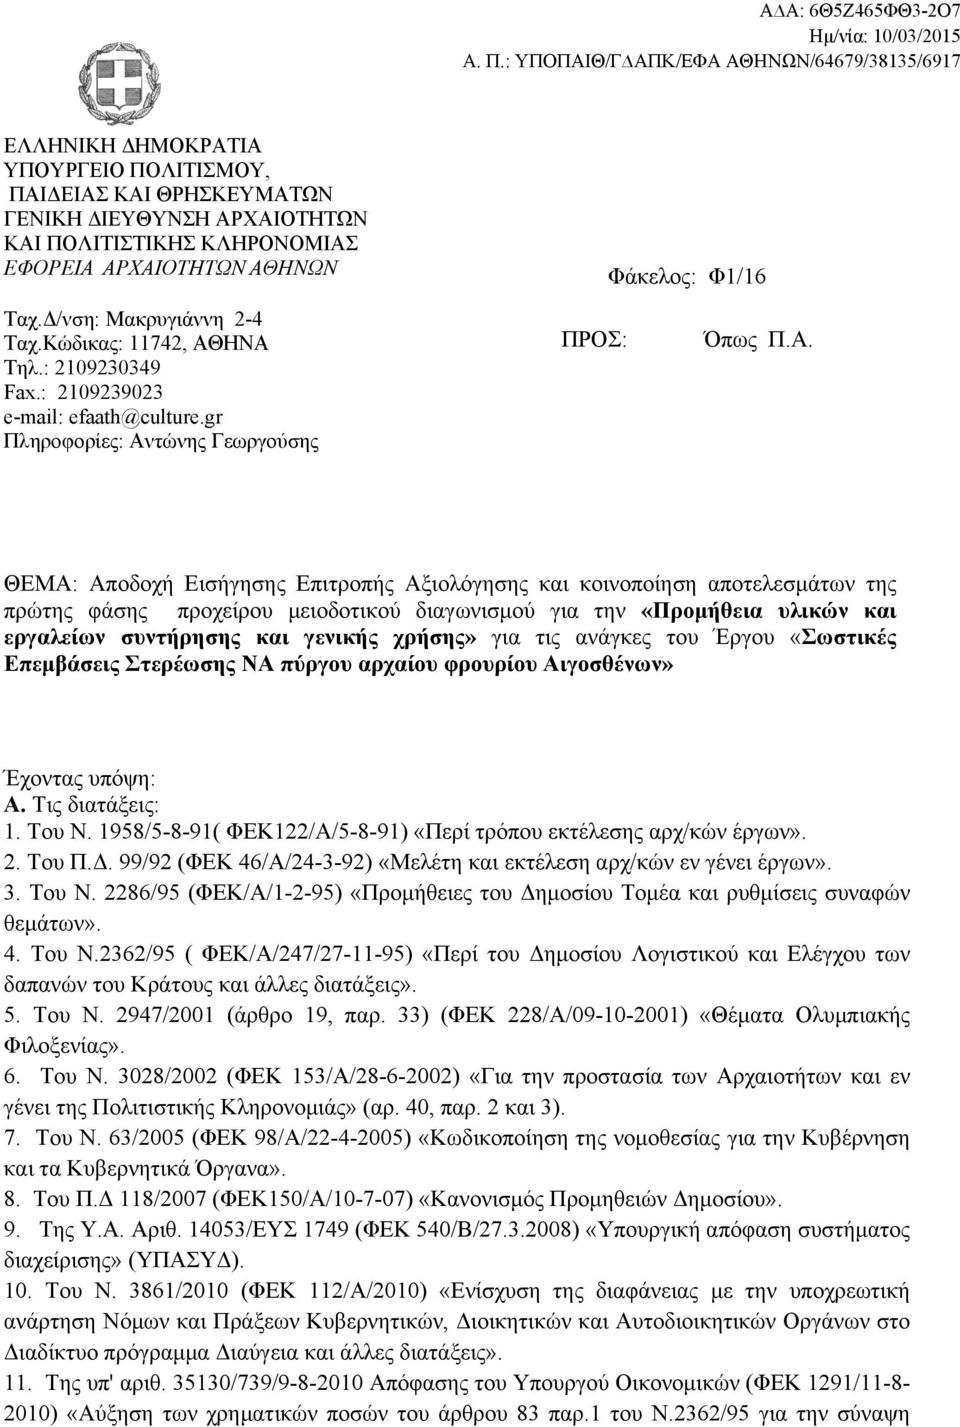 ΗΝΑ Τηλ.: 2109230349 Fax.: 2109239023 e-mail: efaath@culture.gr Πληροφορίες: Αντώνης Γεωργούσης ΠΡΟΣ: Όπως Π.Α. ΘΕΜΑ: Αποδοχή Εισήγησης Επιτροπής Αξιολόγησης και κοινοποίηση αποτελεσμάτων της πρώτης